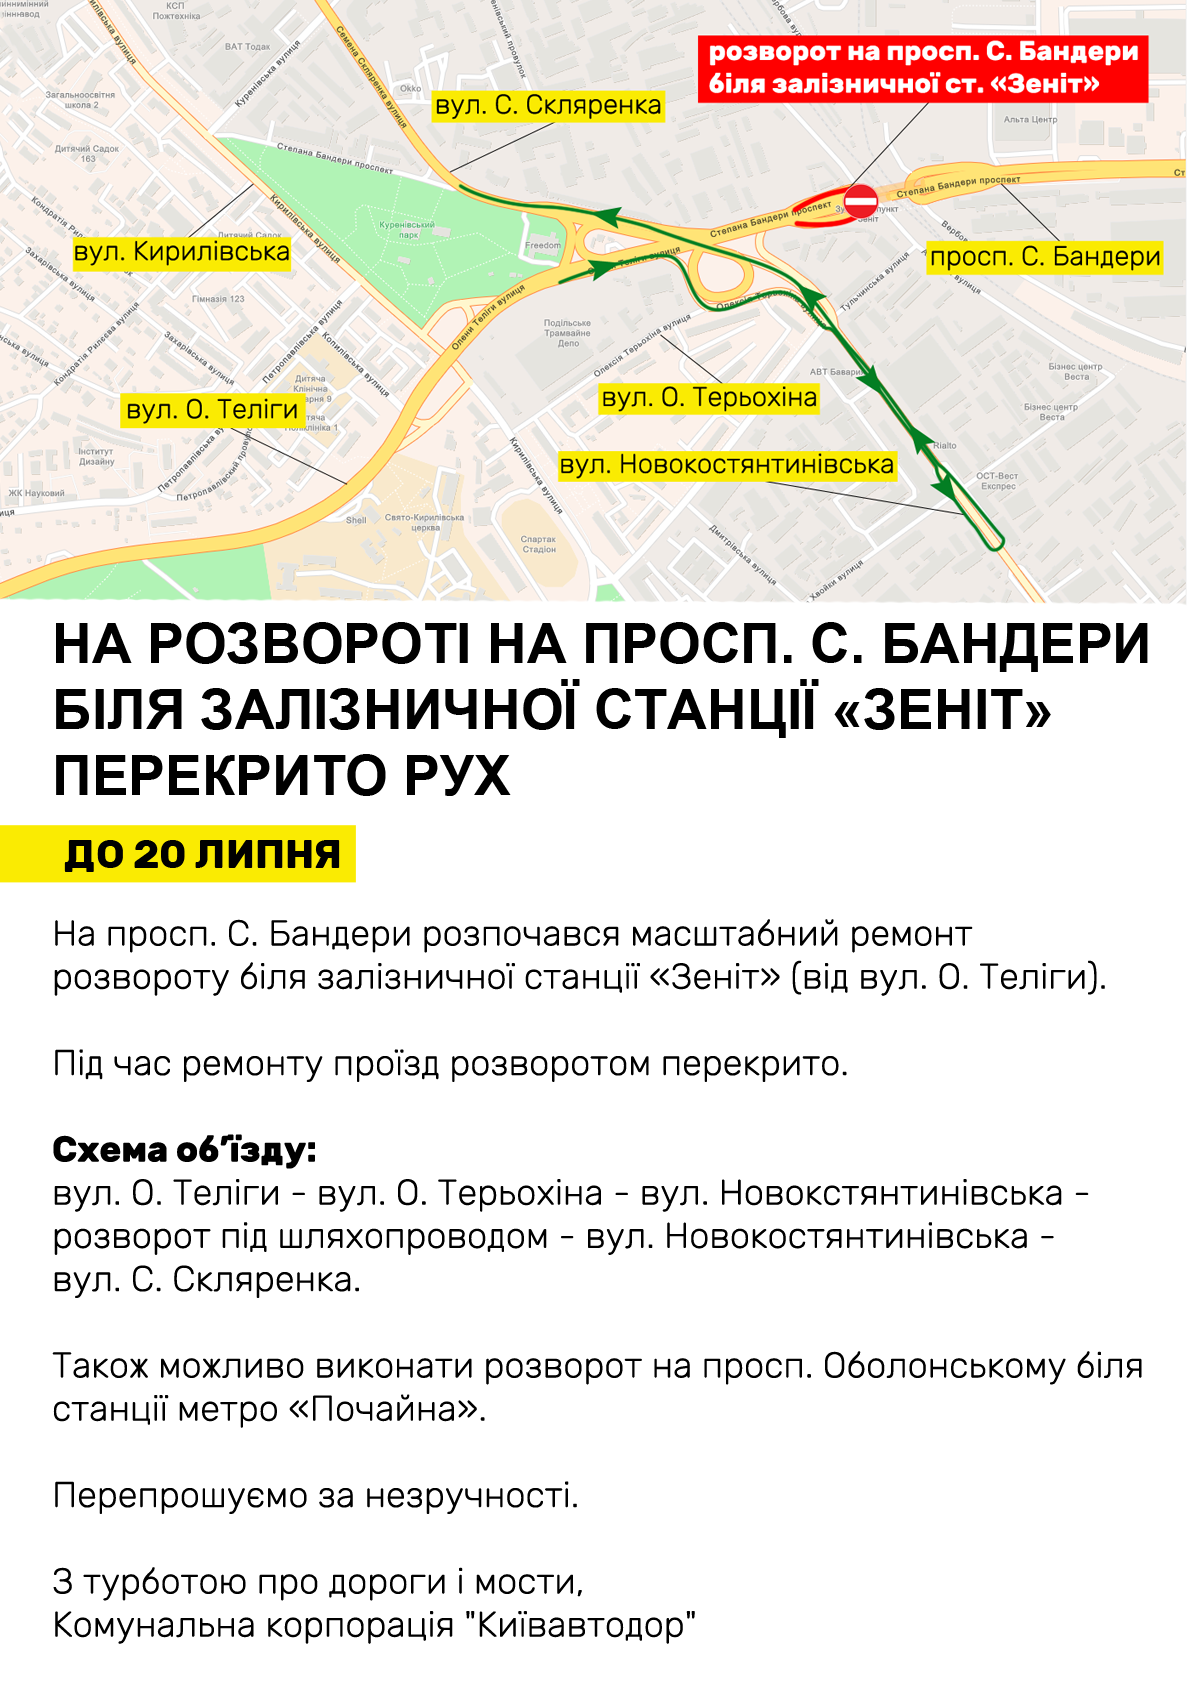 В Киеве закрыли разворот на проспекте Степана Бандеры.